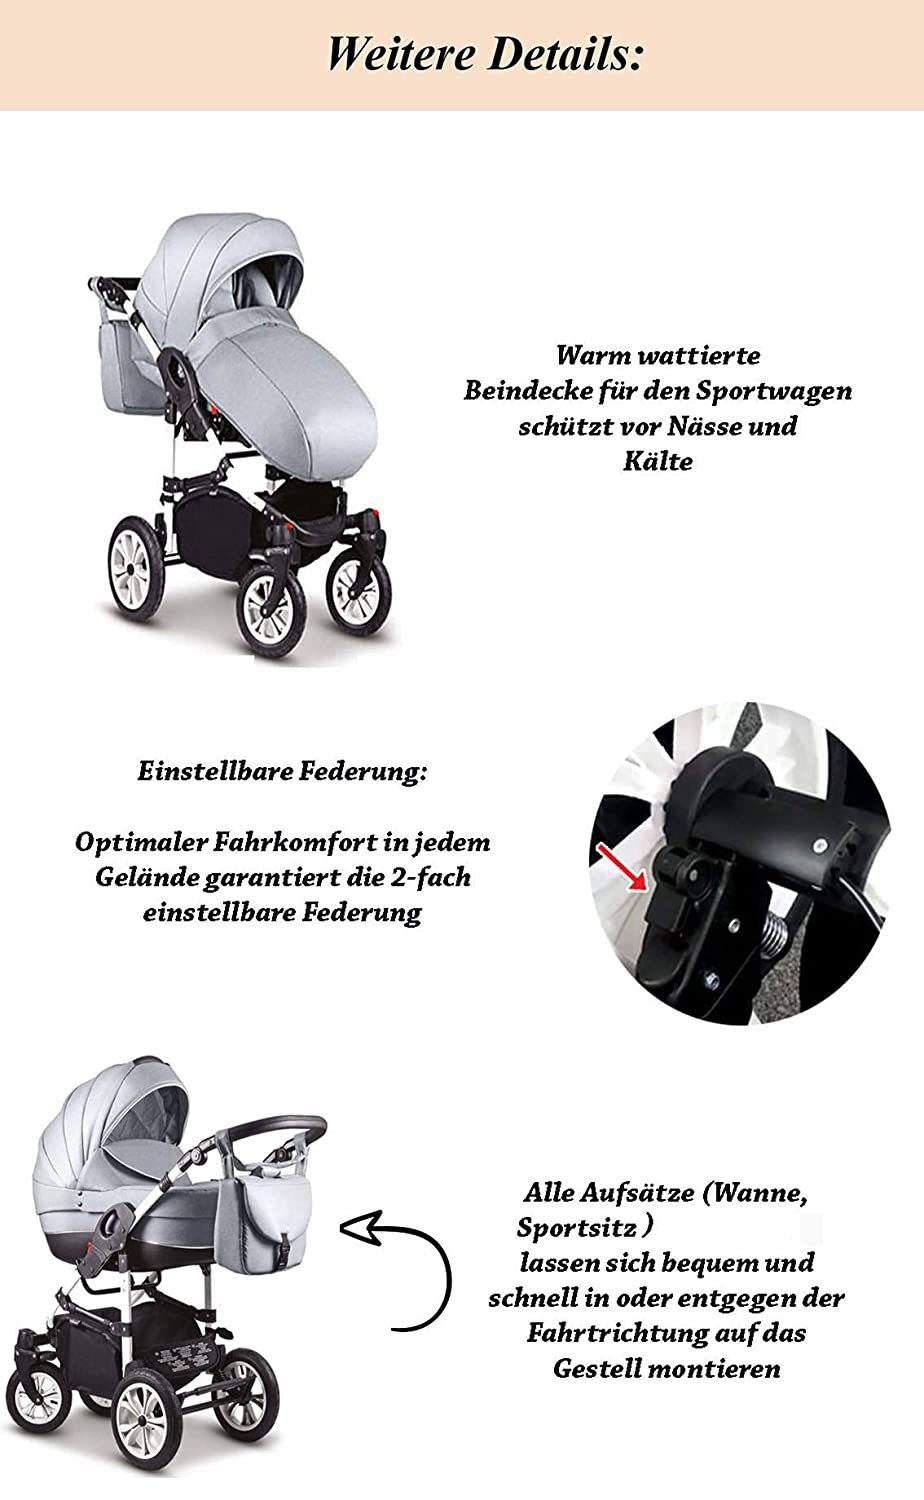 ECO 1 babies-on-wheels - Kombi-Kinderwagen Kunstleder Farben Schwarz-Weiß 13 - 2 Cosmo in Kinderwagen-Set 16 Teile in